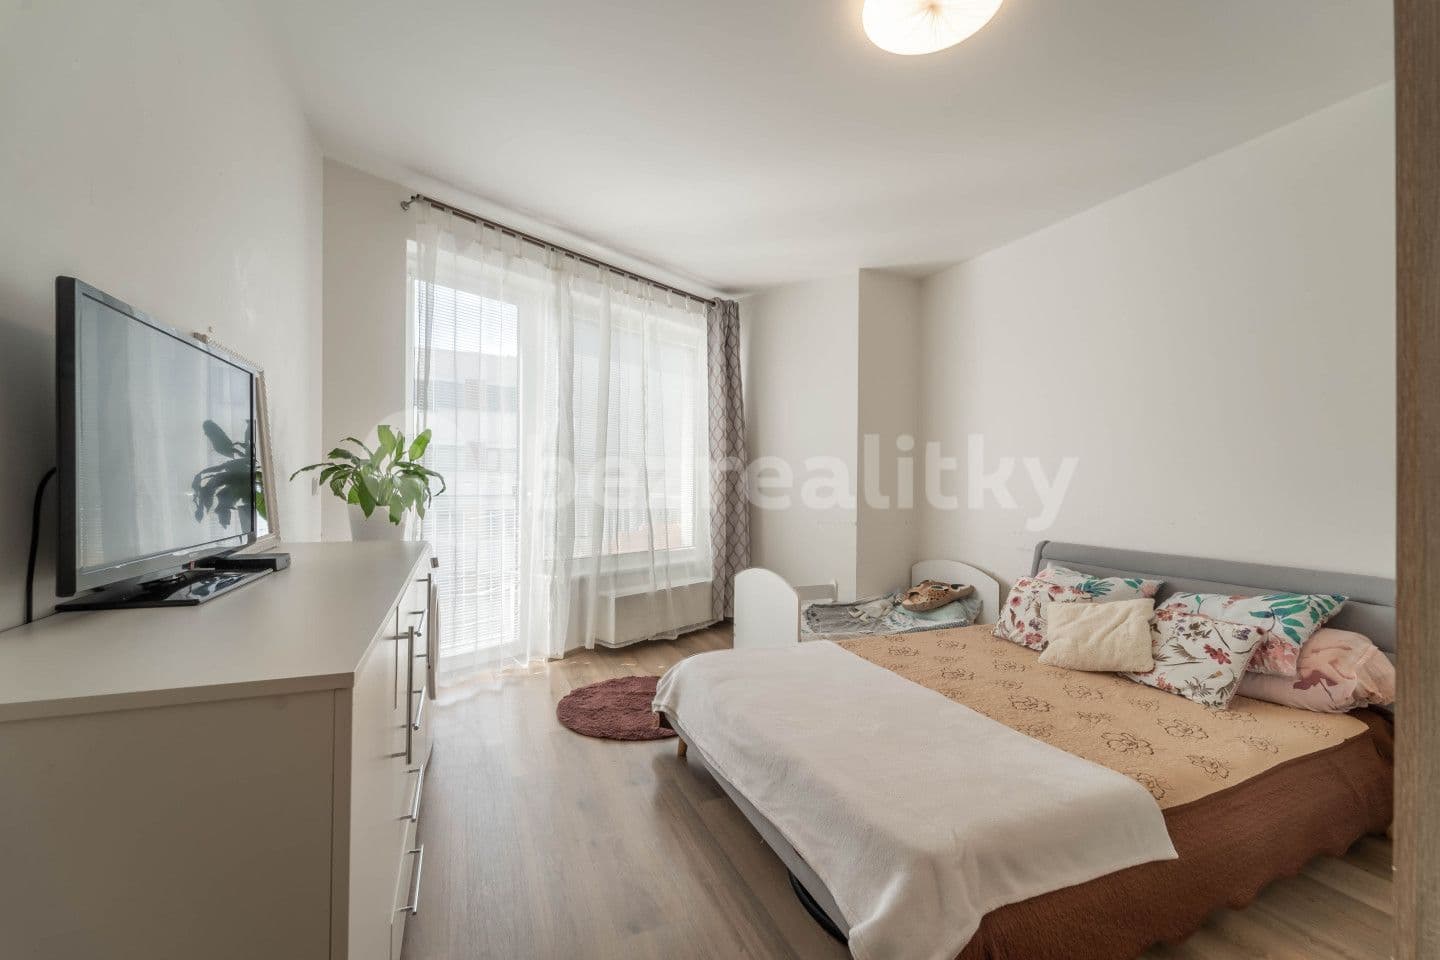 1 bedroom with open-plan kitchen flat for sale, 71 m², Mezi vodami, Prague, Prague